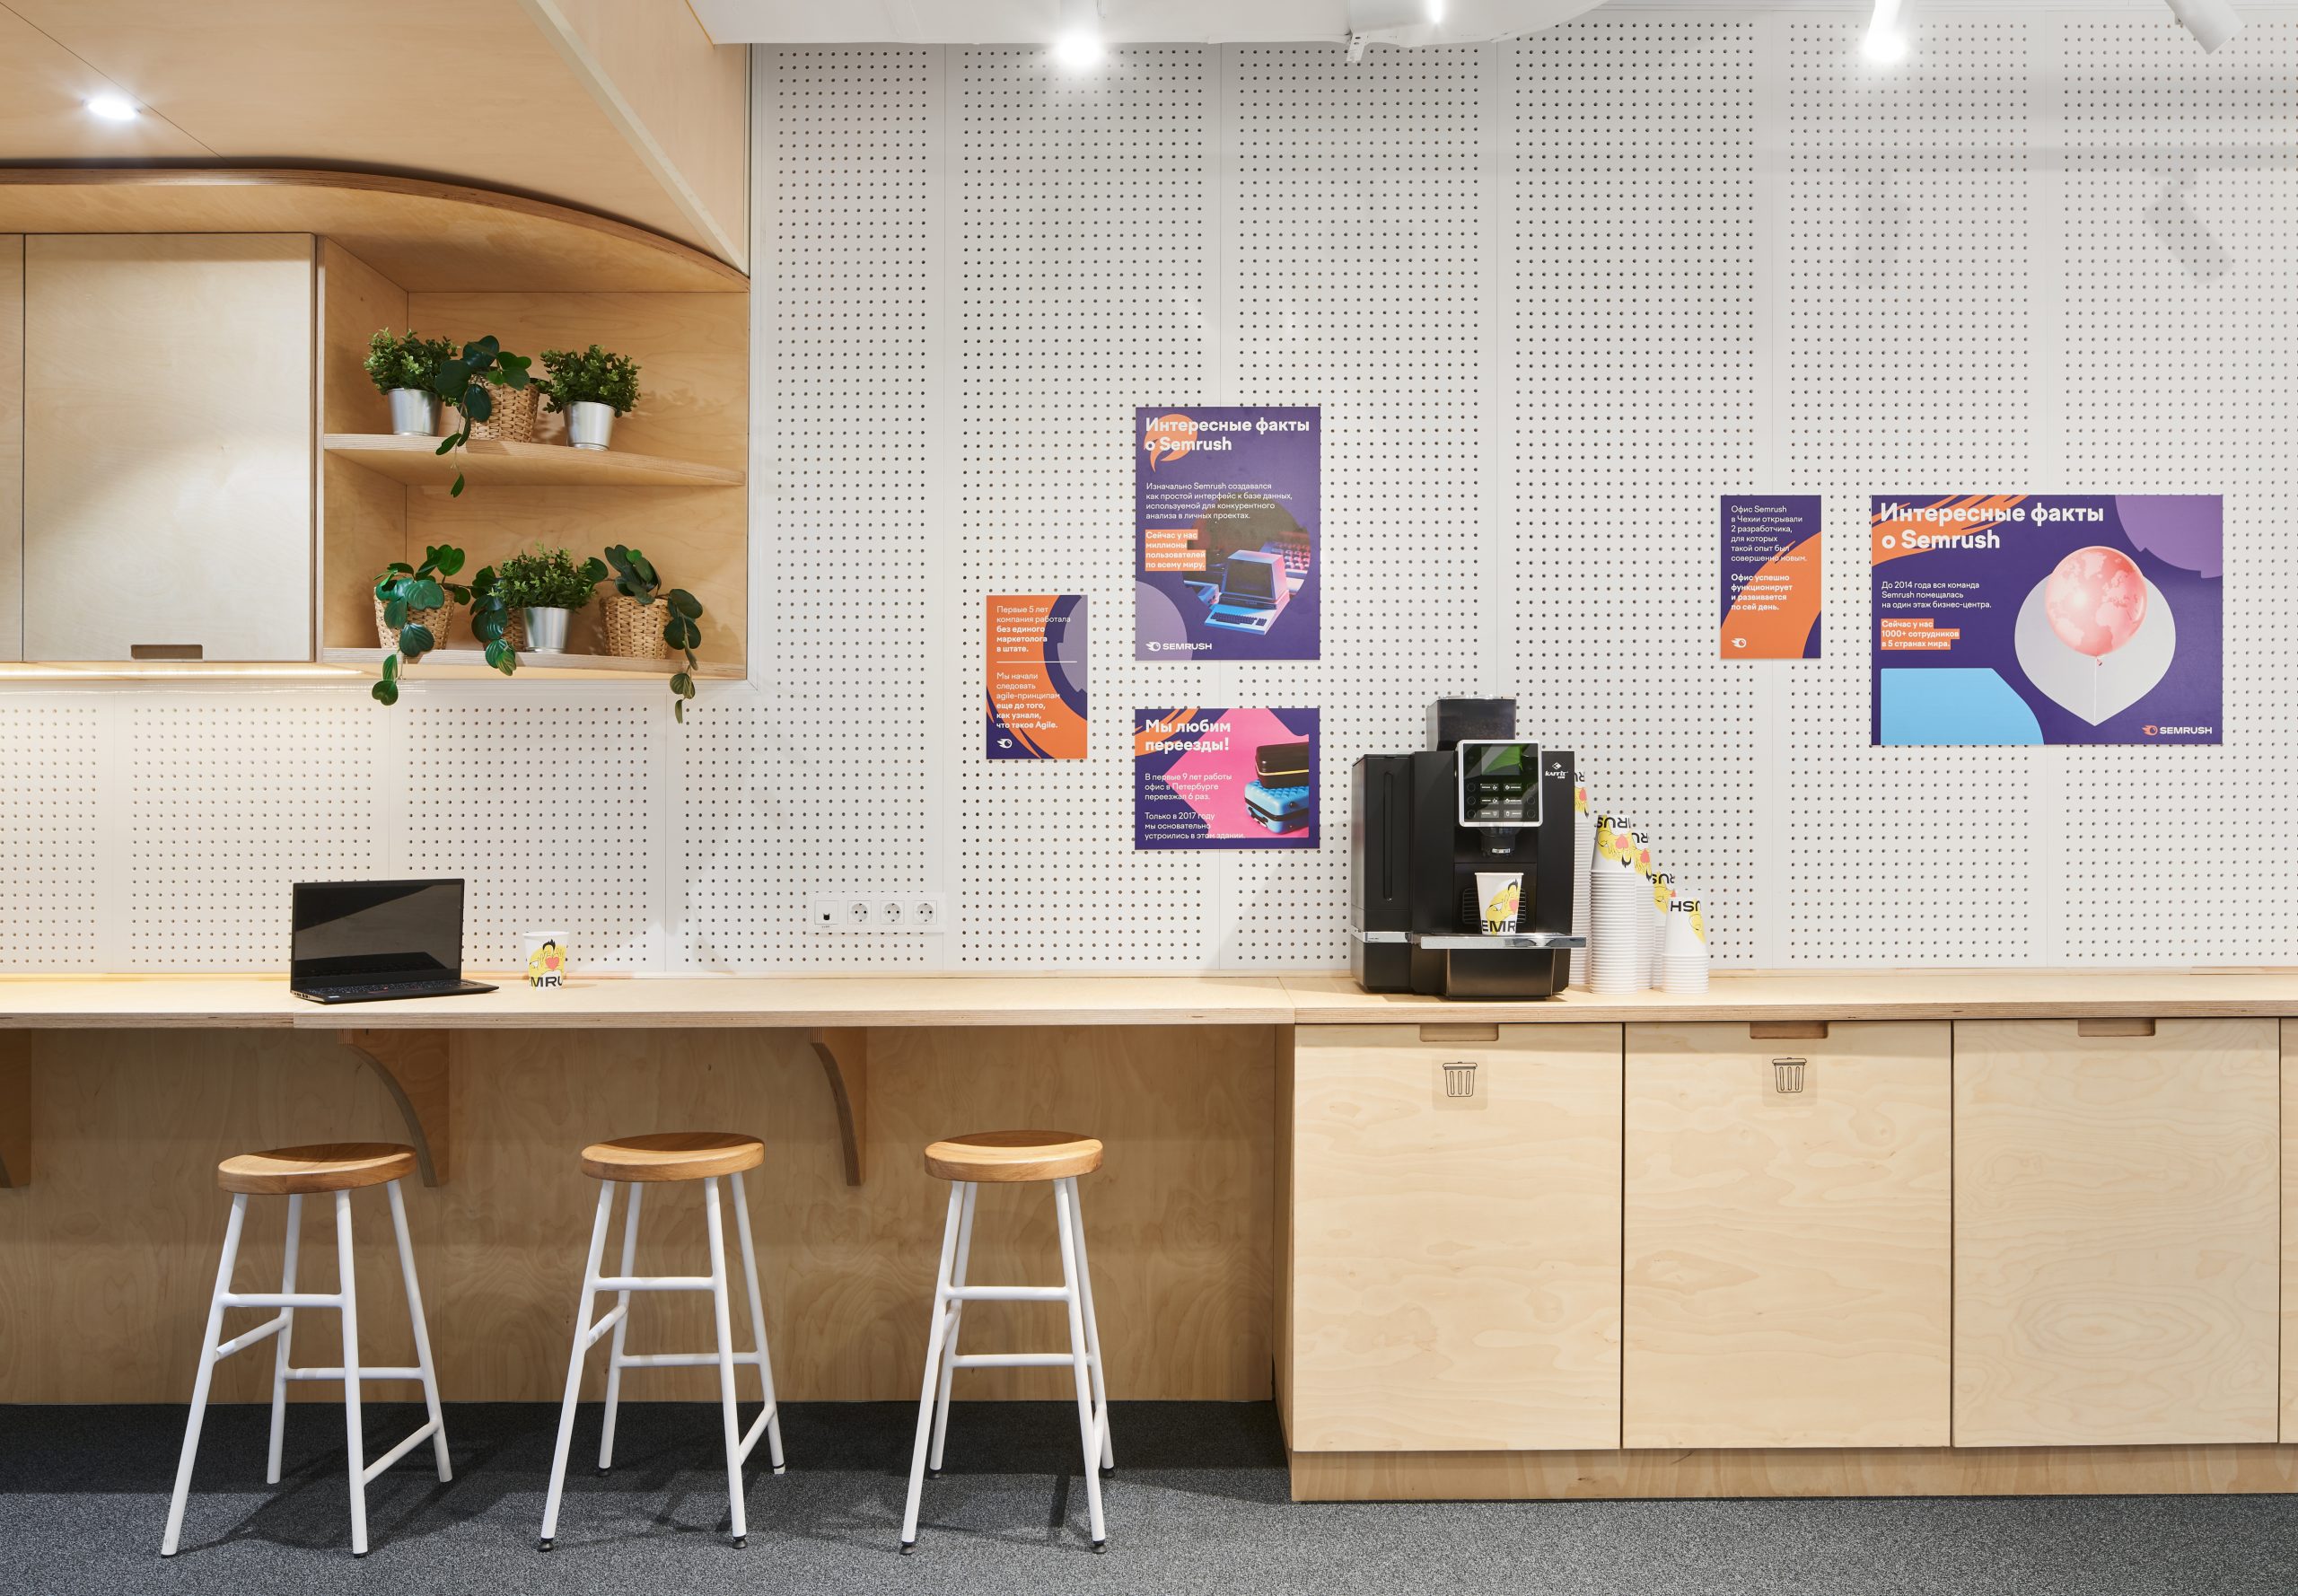 Дизайн офиса в Санкт-Петербурге для IT-компании Semrush - фото №1